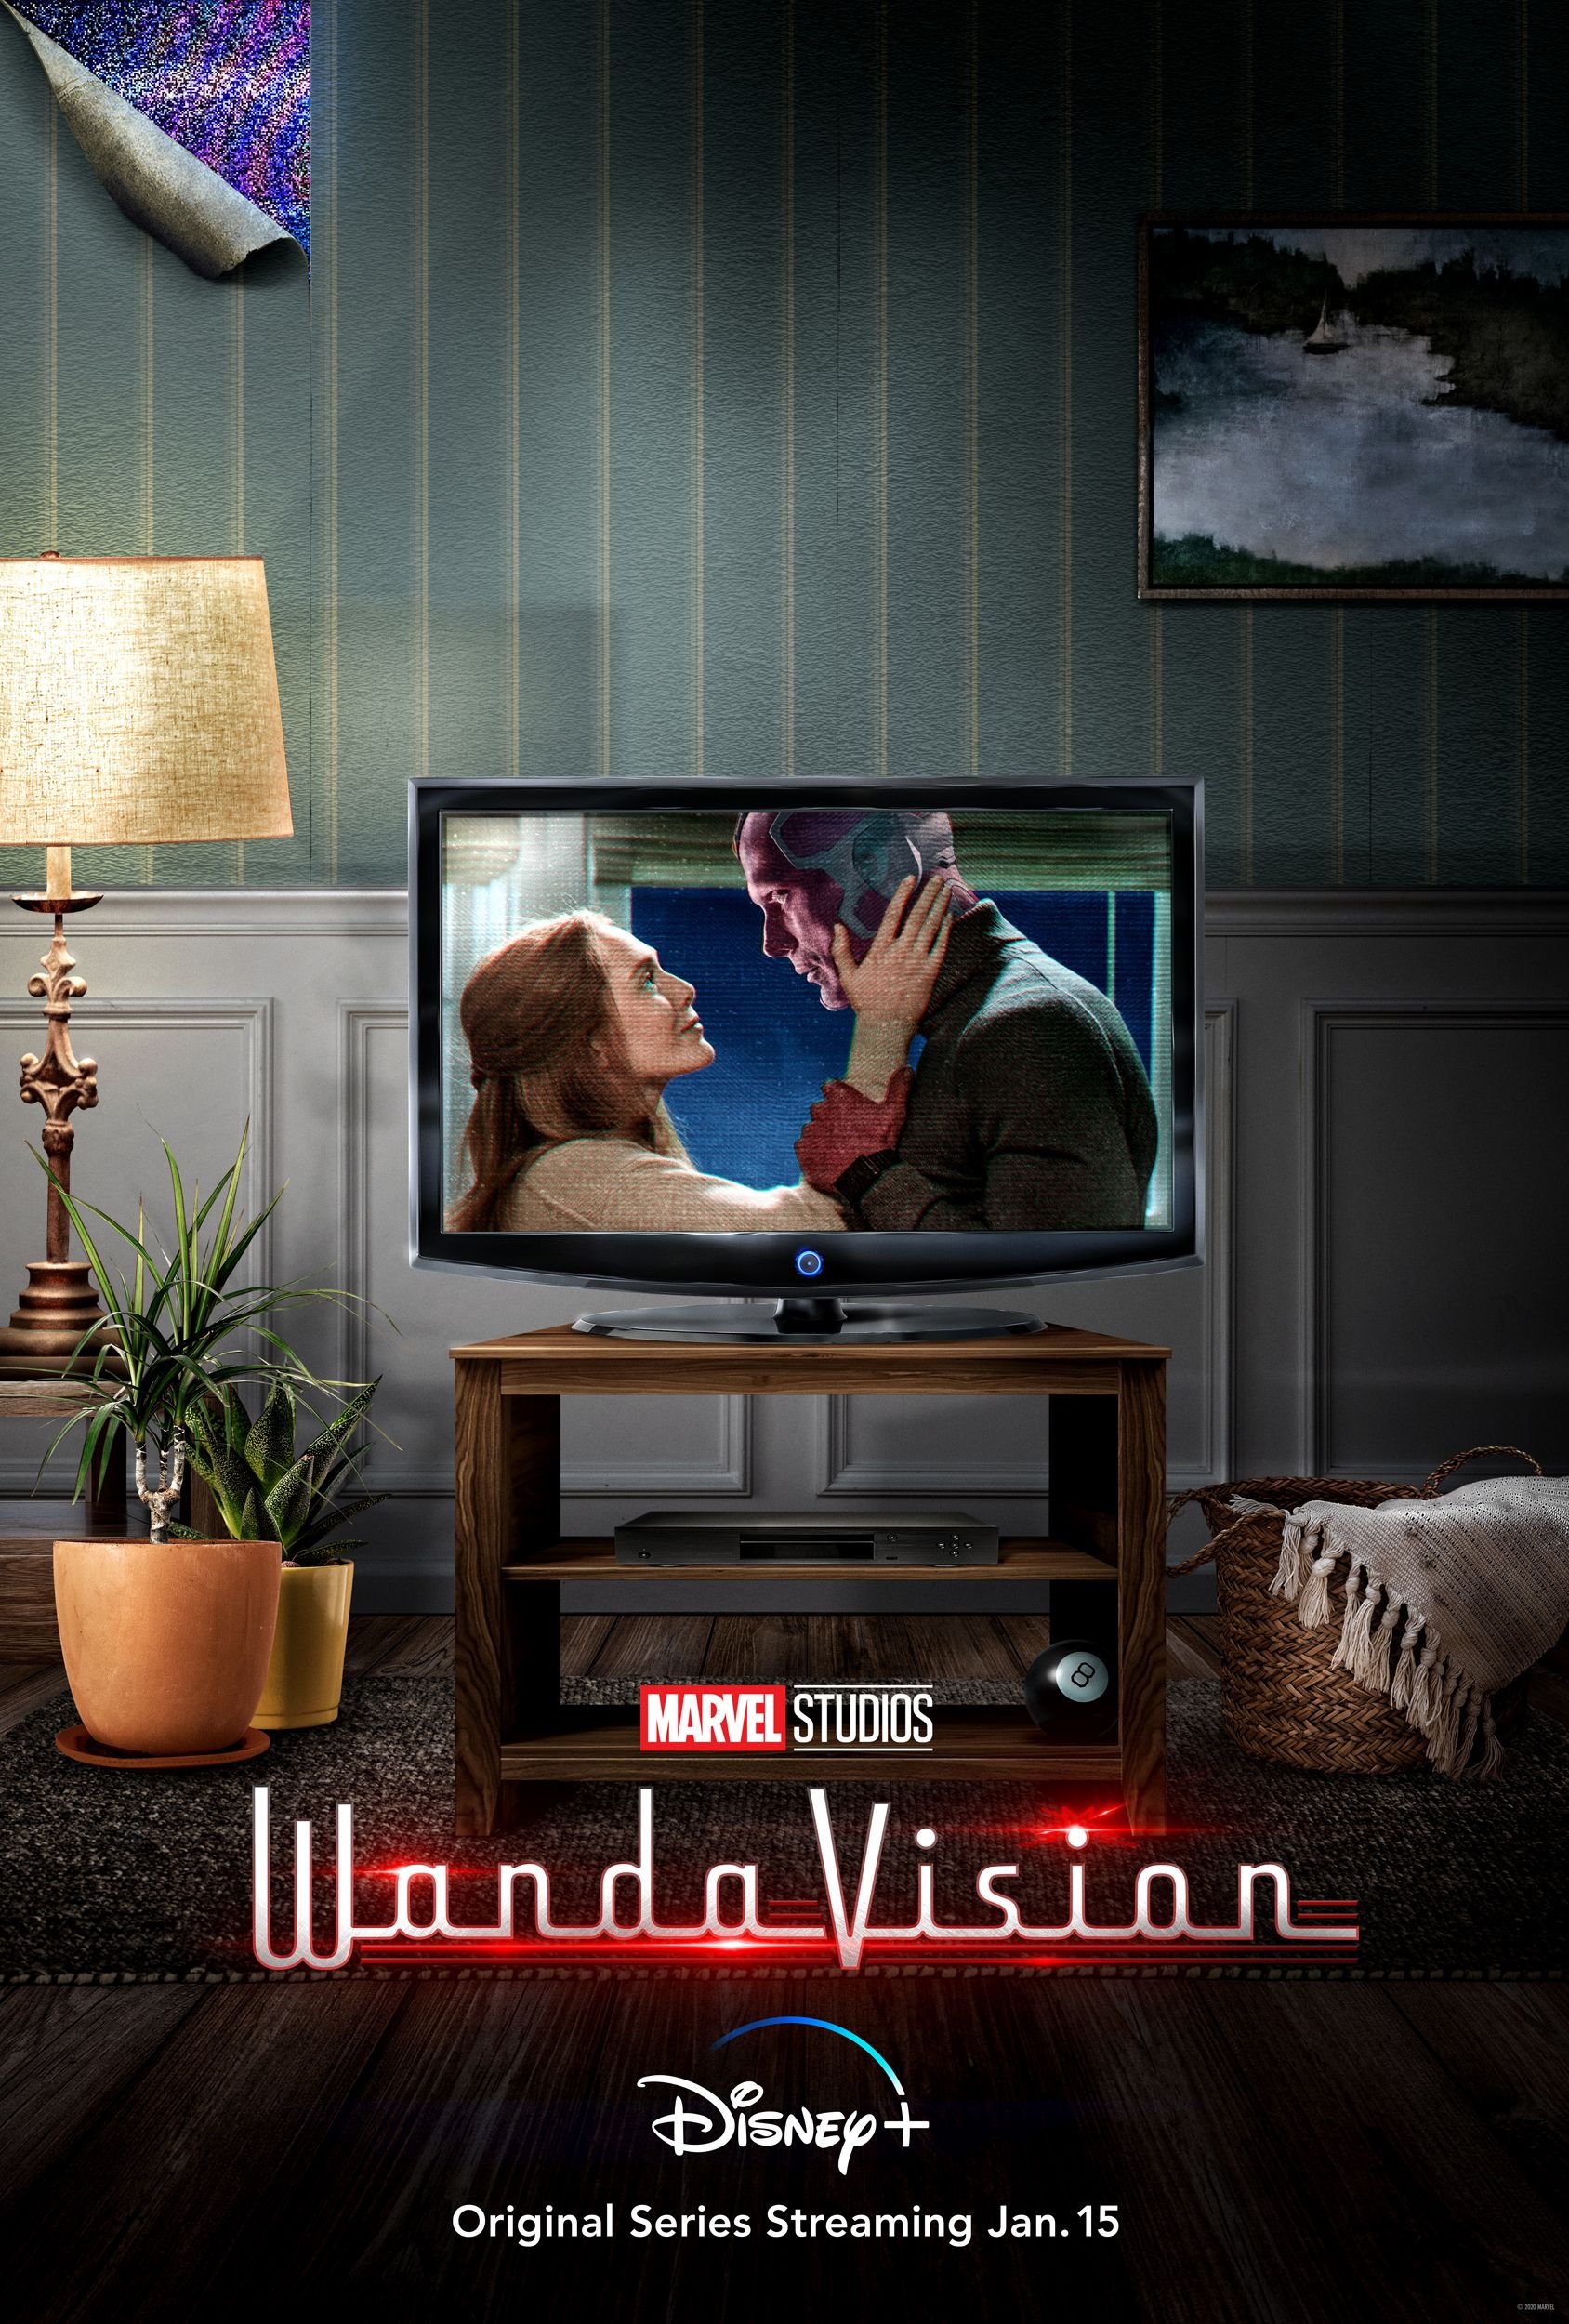 Mega Sized TV Poster Image for WandaVision (#7 of 26)